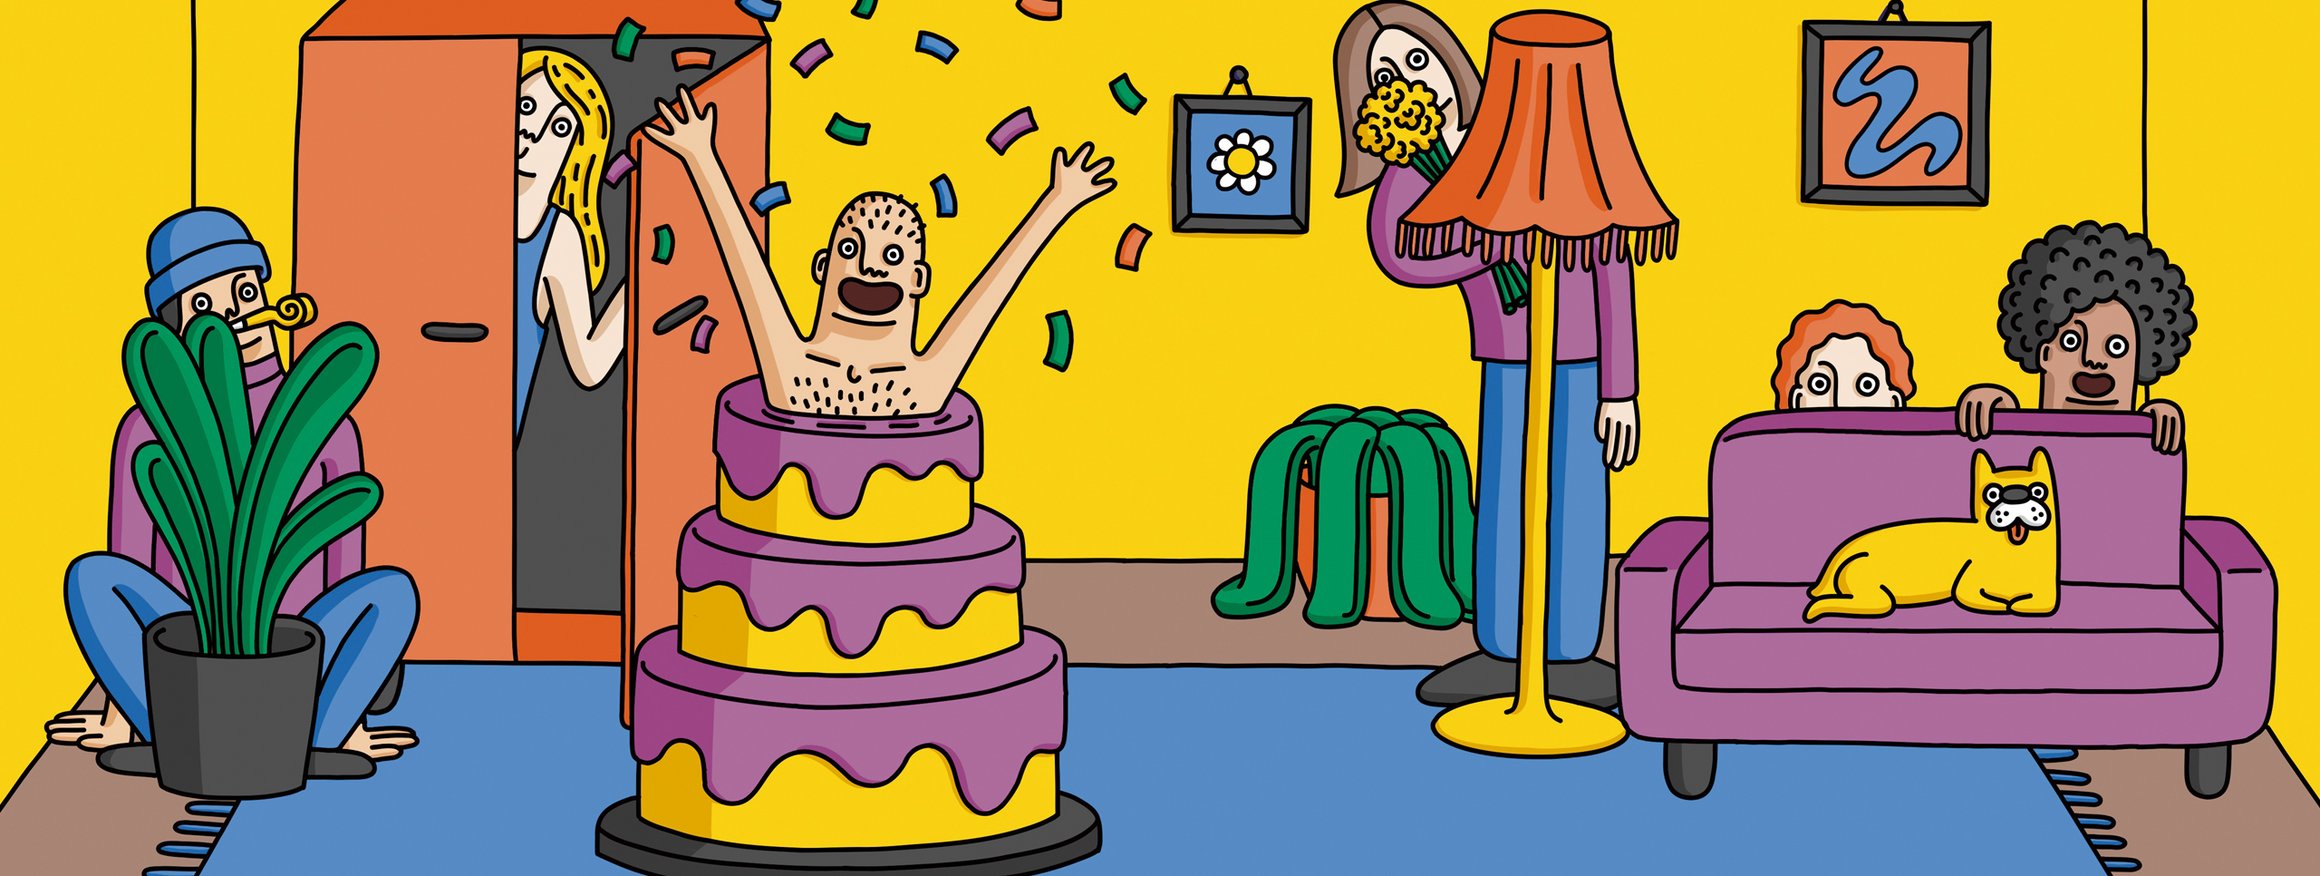 Die Illustration zeigt Personen, die jemanden überraschen möchten, zum Beispiel ein Mann, der fröhlich aus einer Torte springt